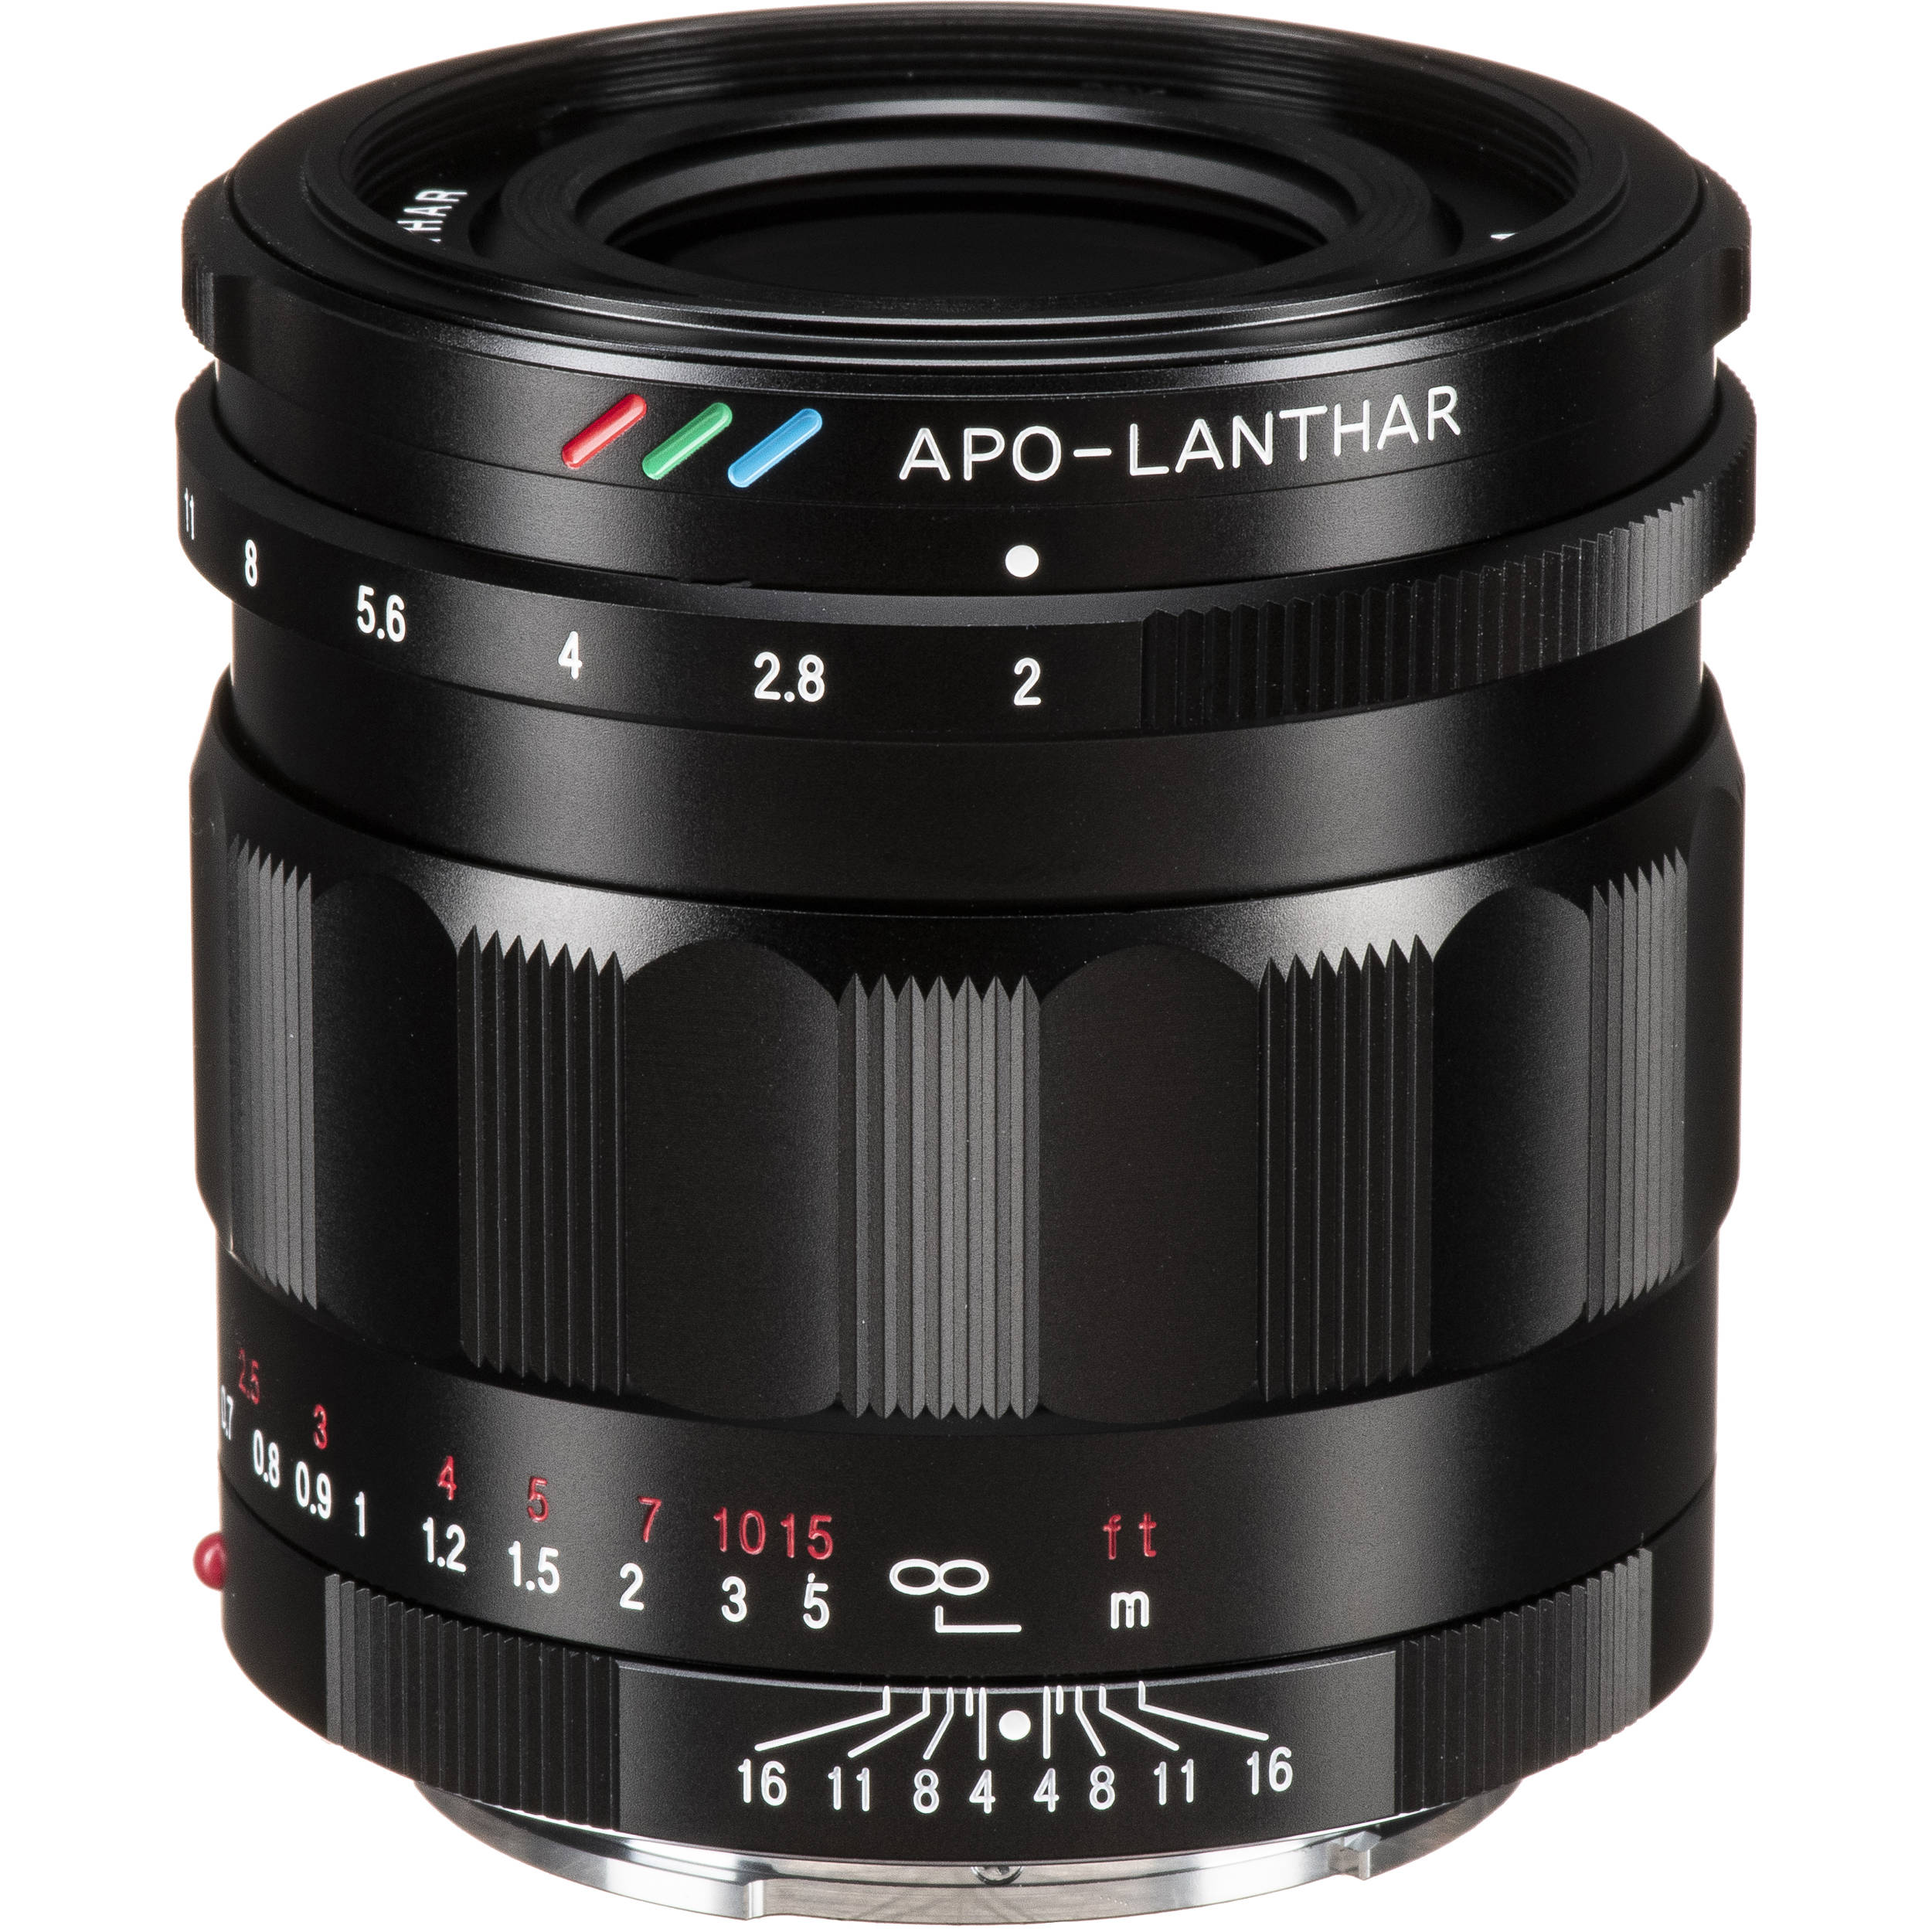 TThumbnail image for Voigtlander APO-LANTHAR 50mm f/2 Aspherical Lens for Sony E